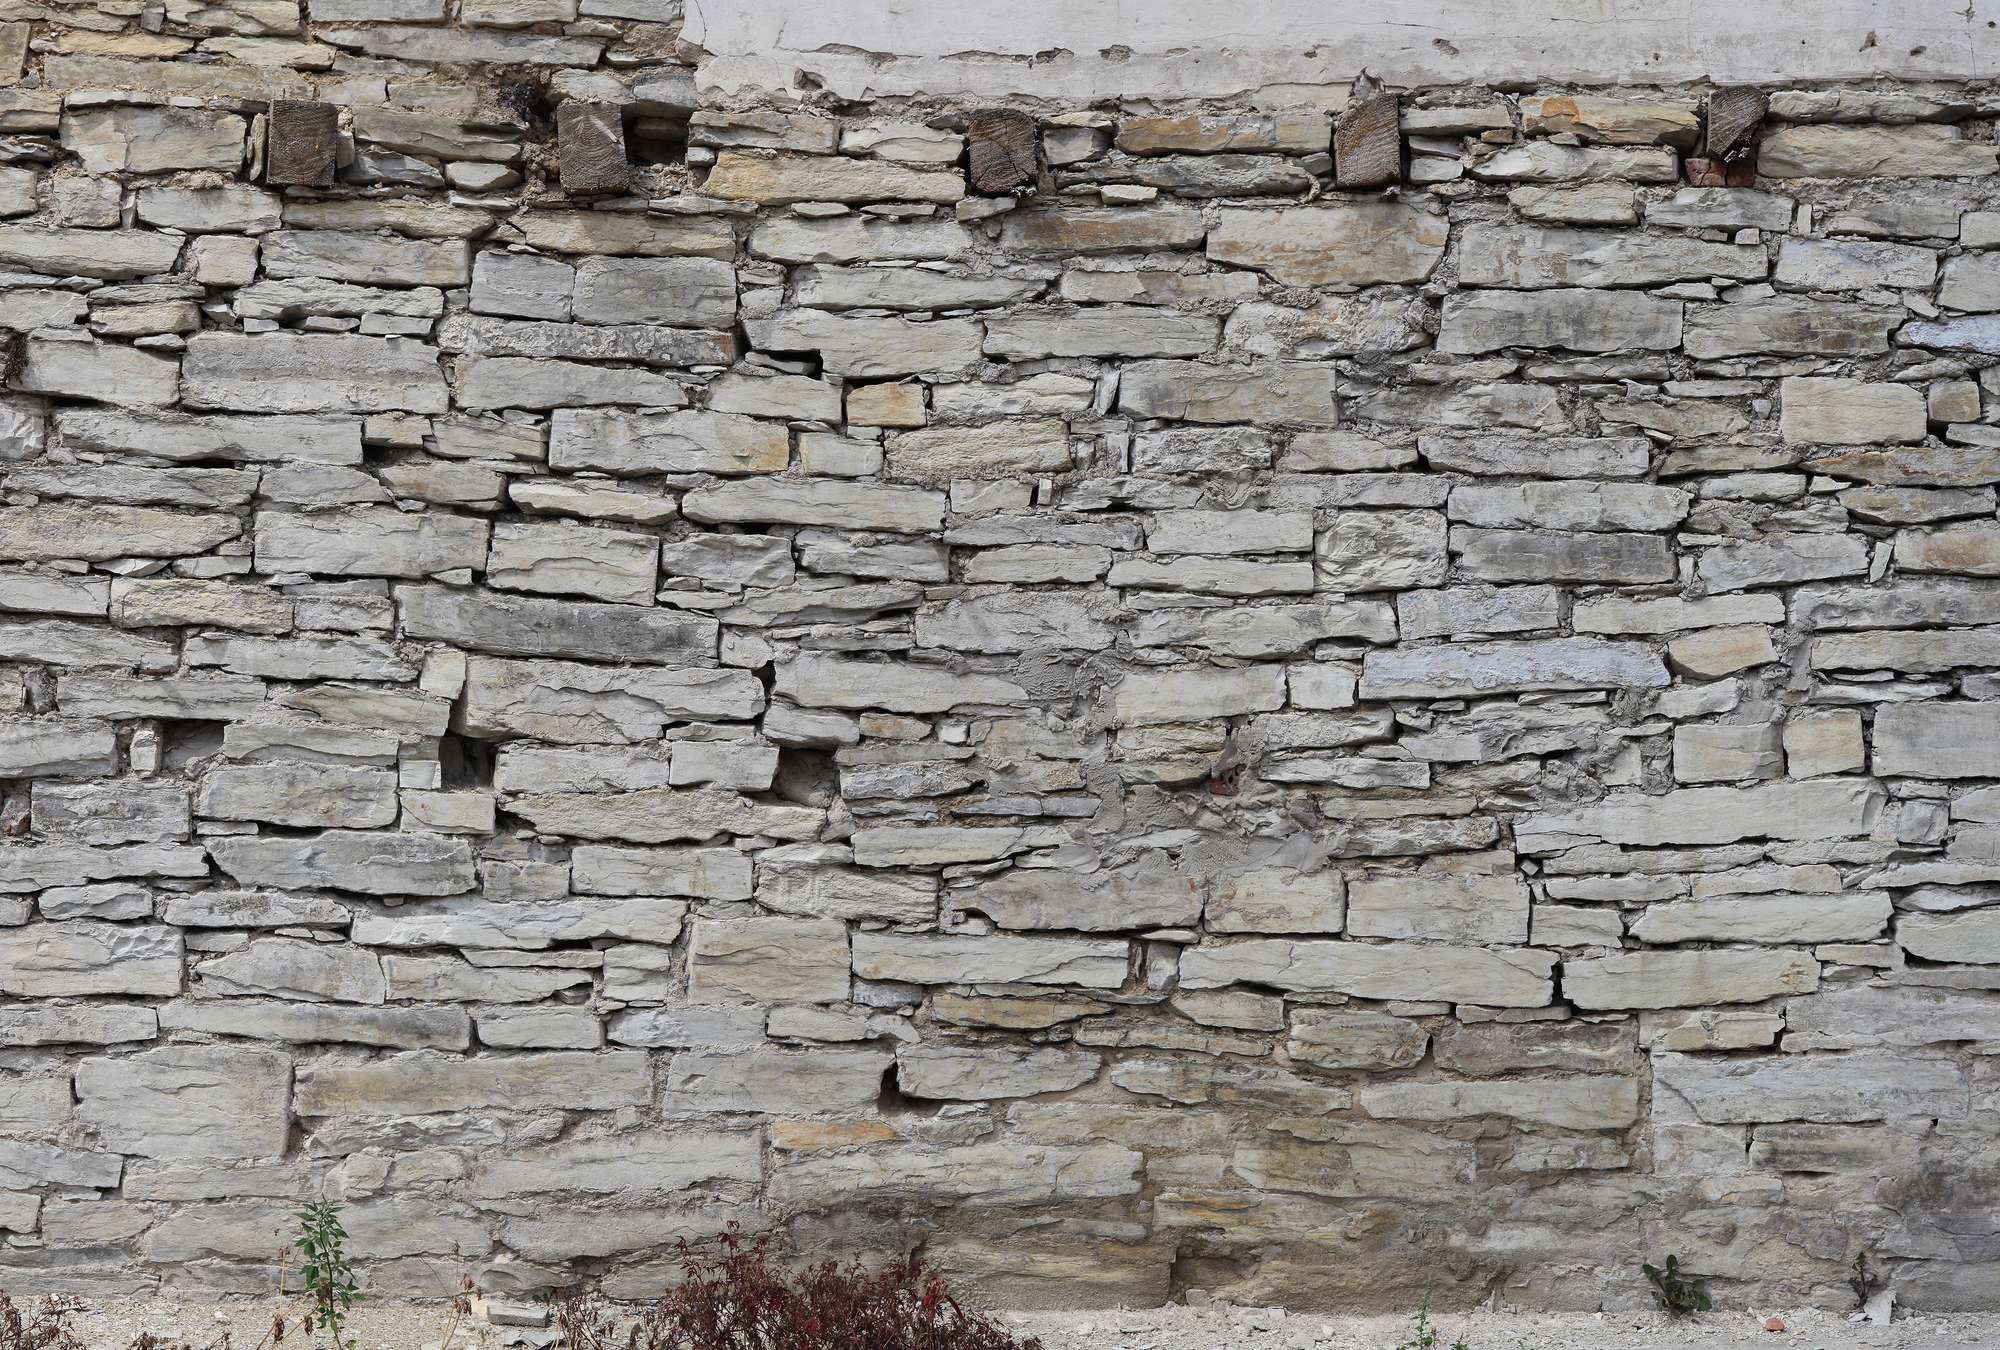             Papier peint panoramique imitation pierre avec mur de pierres sèches clair
        